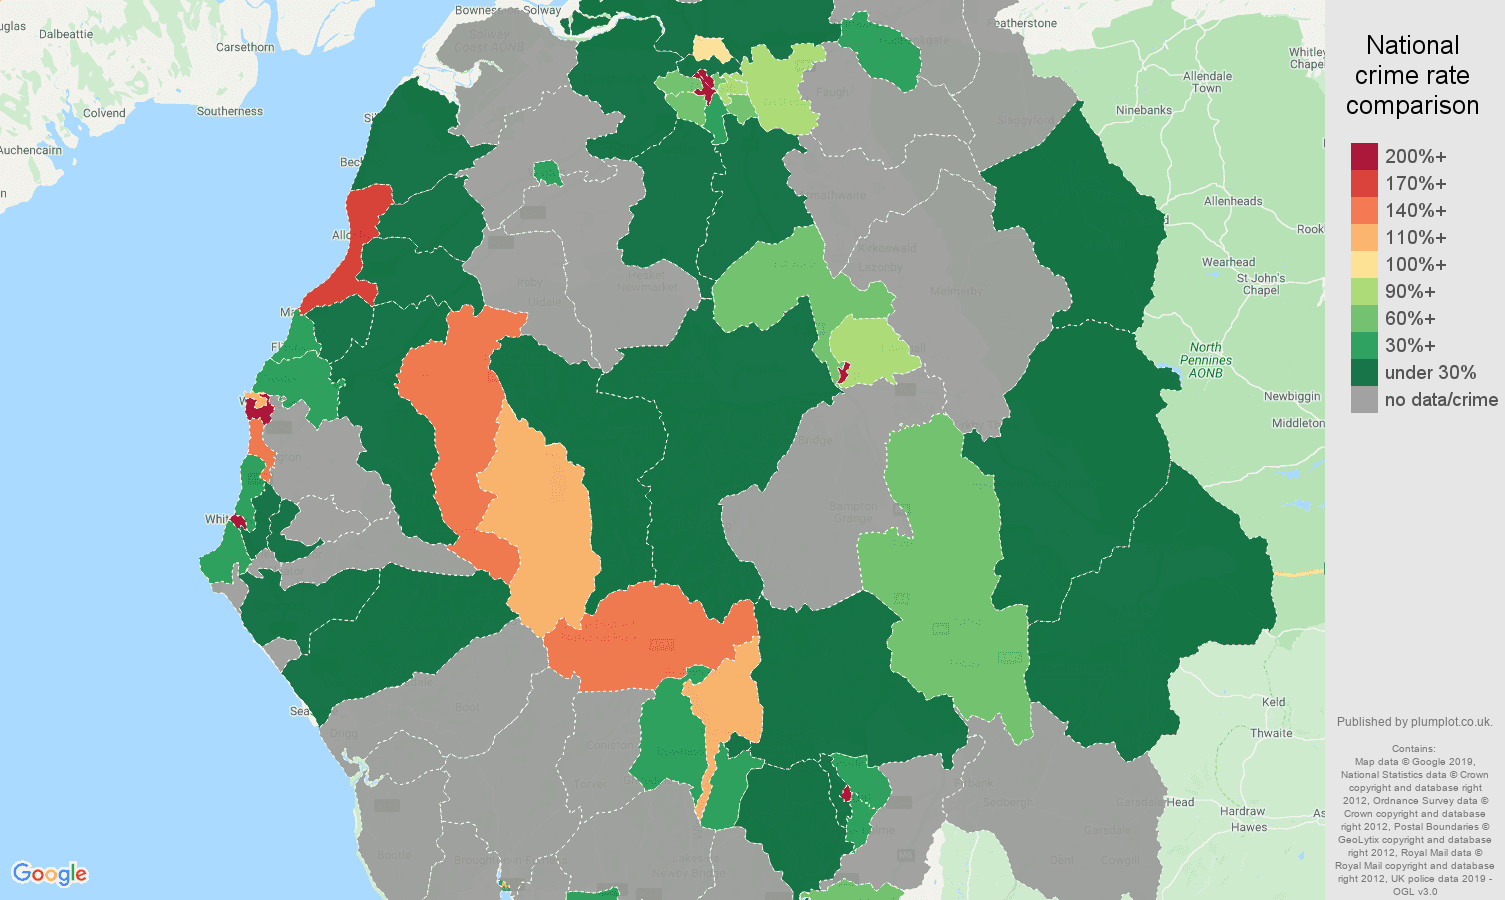 Cumbria shoplifting crime rate comparison map